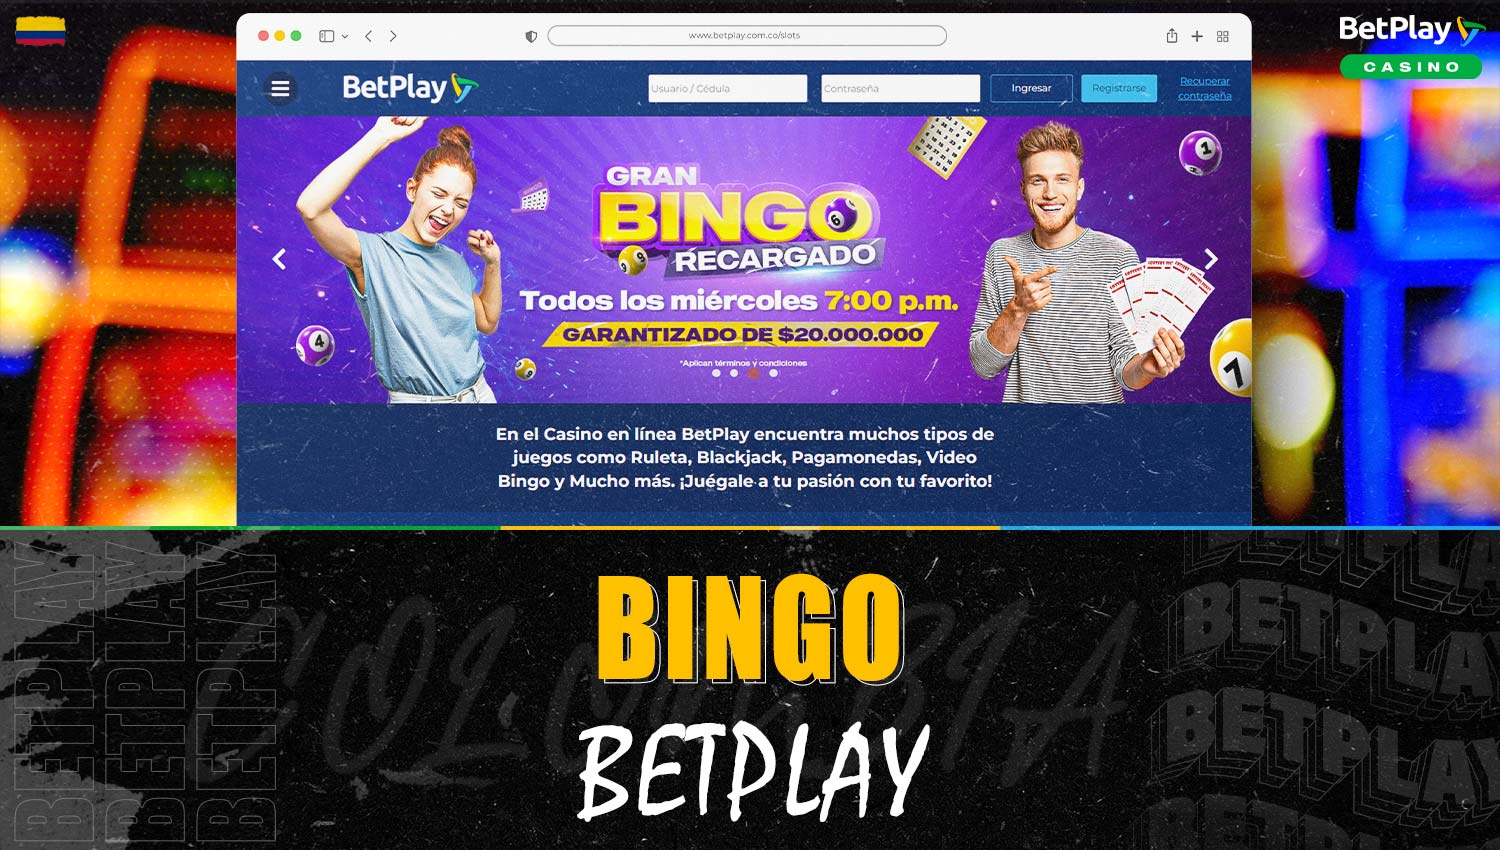 Análisis detallado de "Bingo" en la plataforma Betplay Colombia